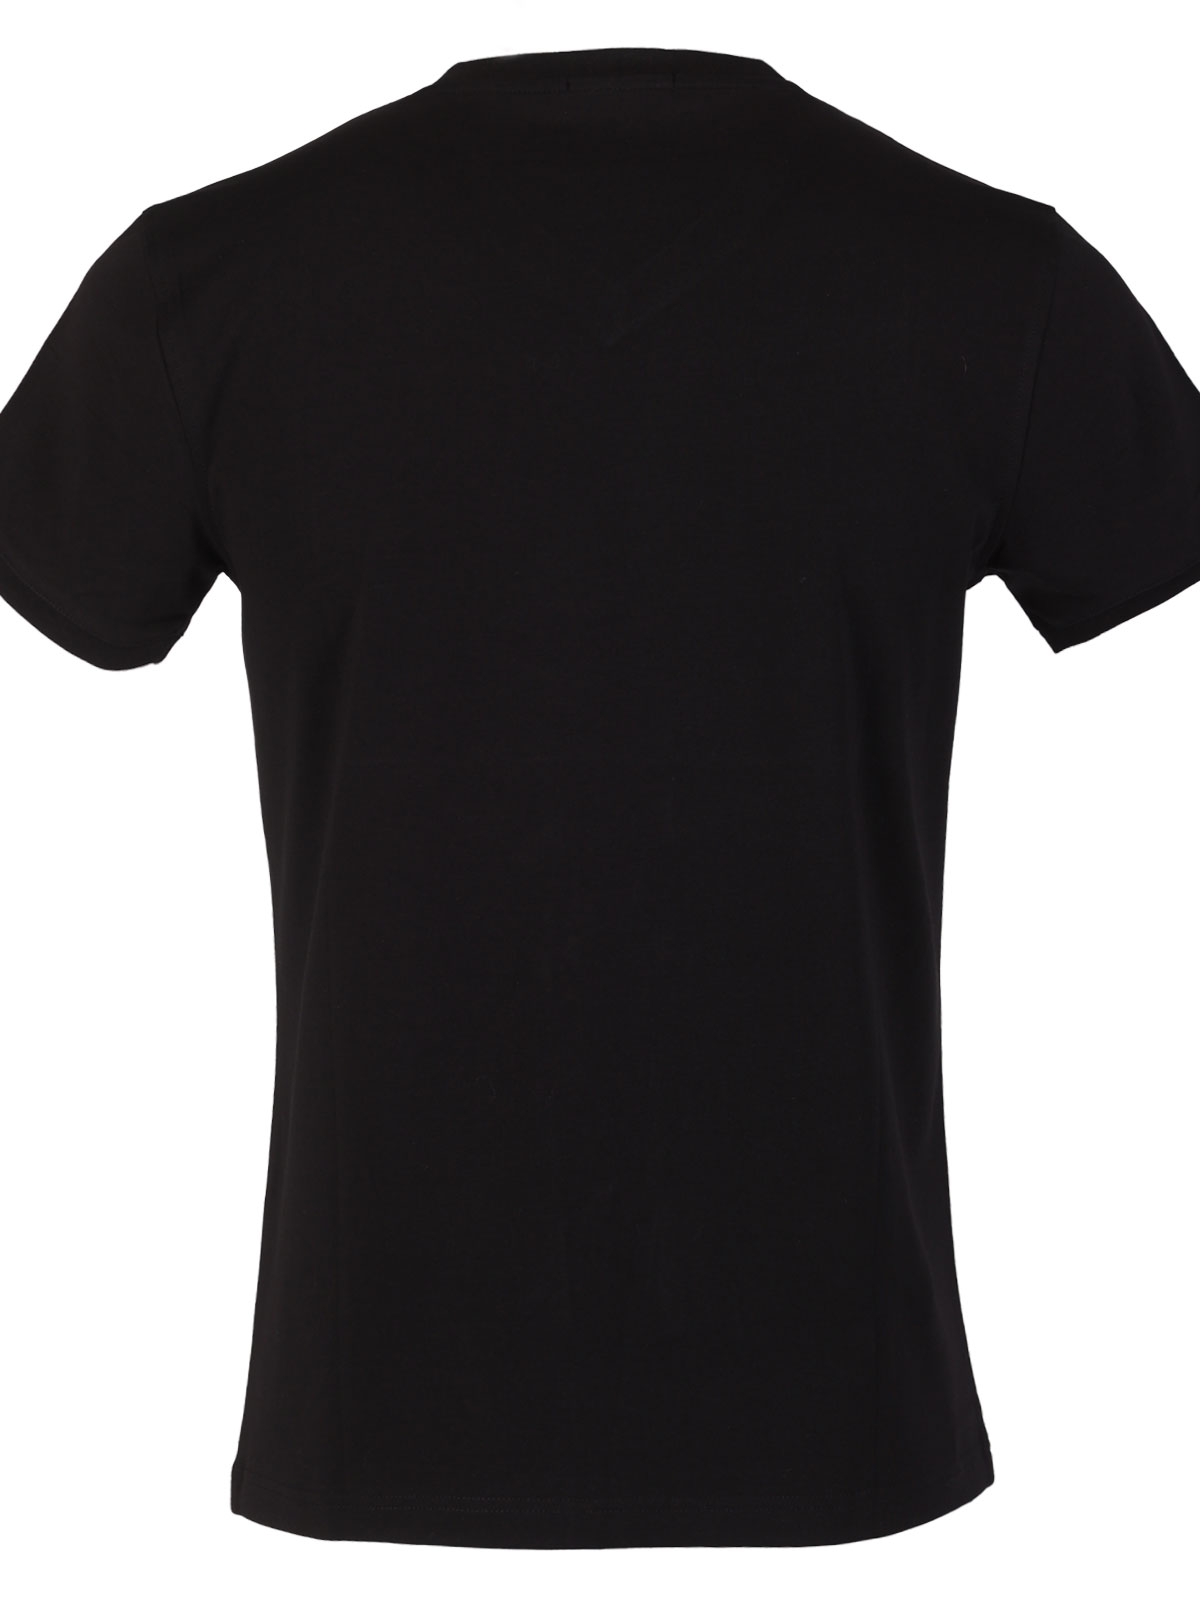 Tricou negru curat - 97020 € 20.25 img2